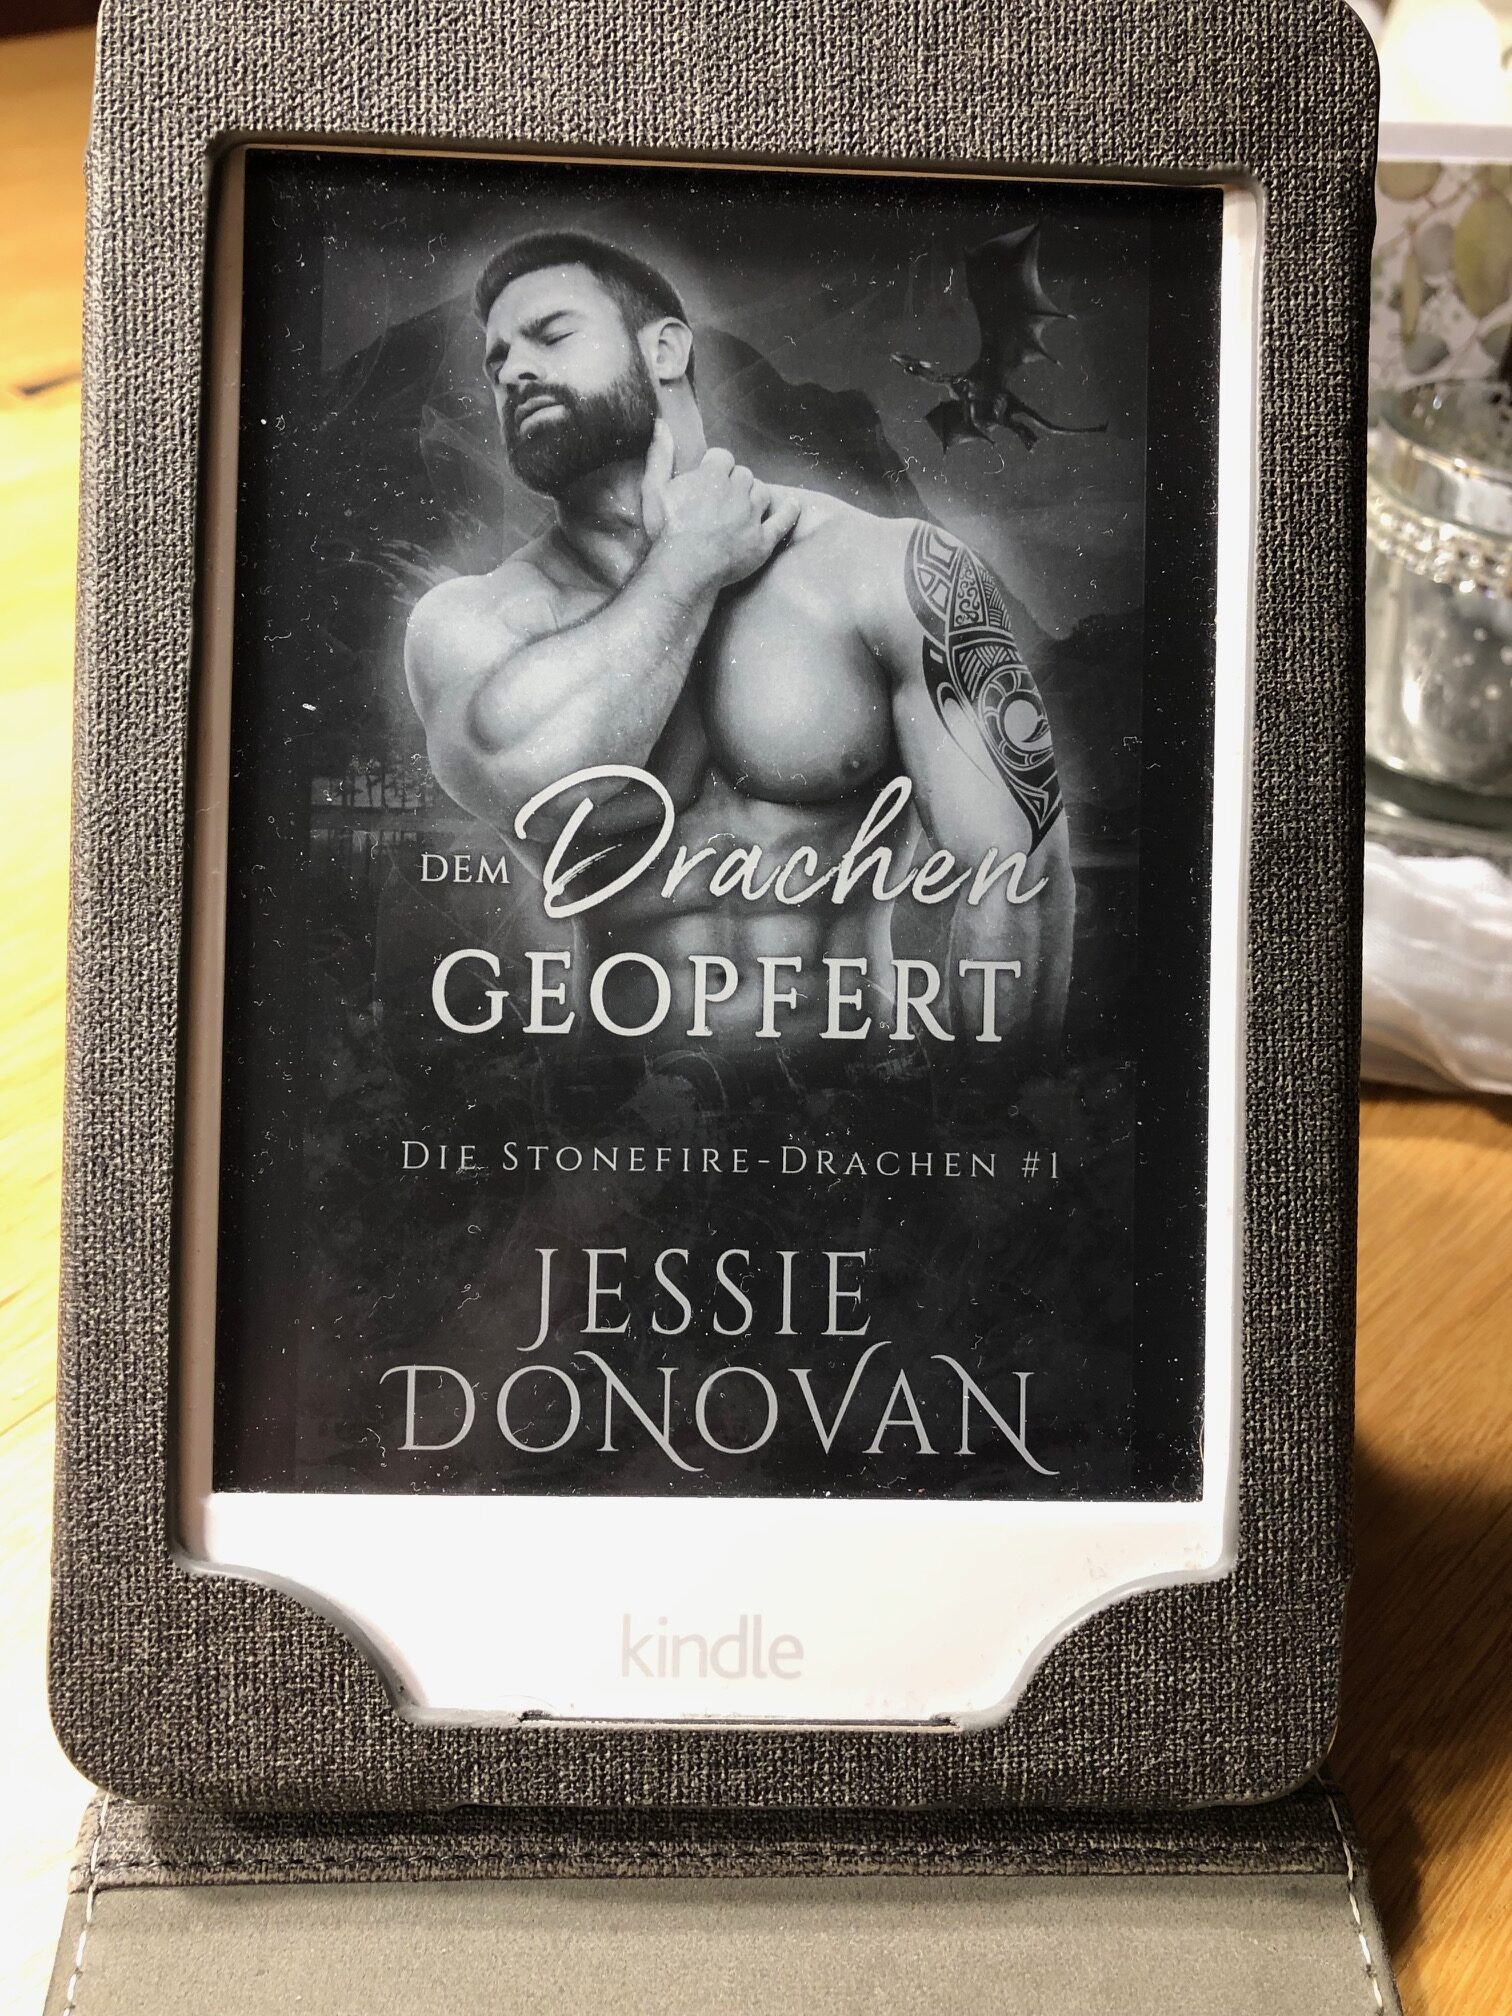 Jessie Donovan — Dem Drachen geopfert